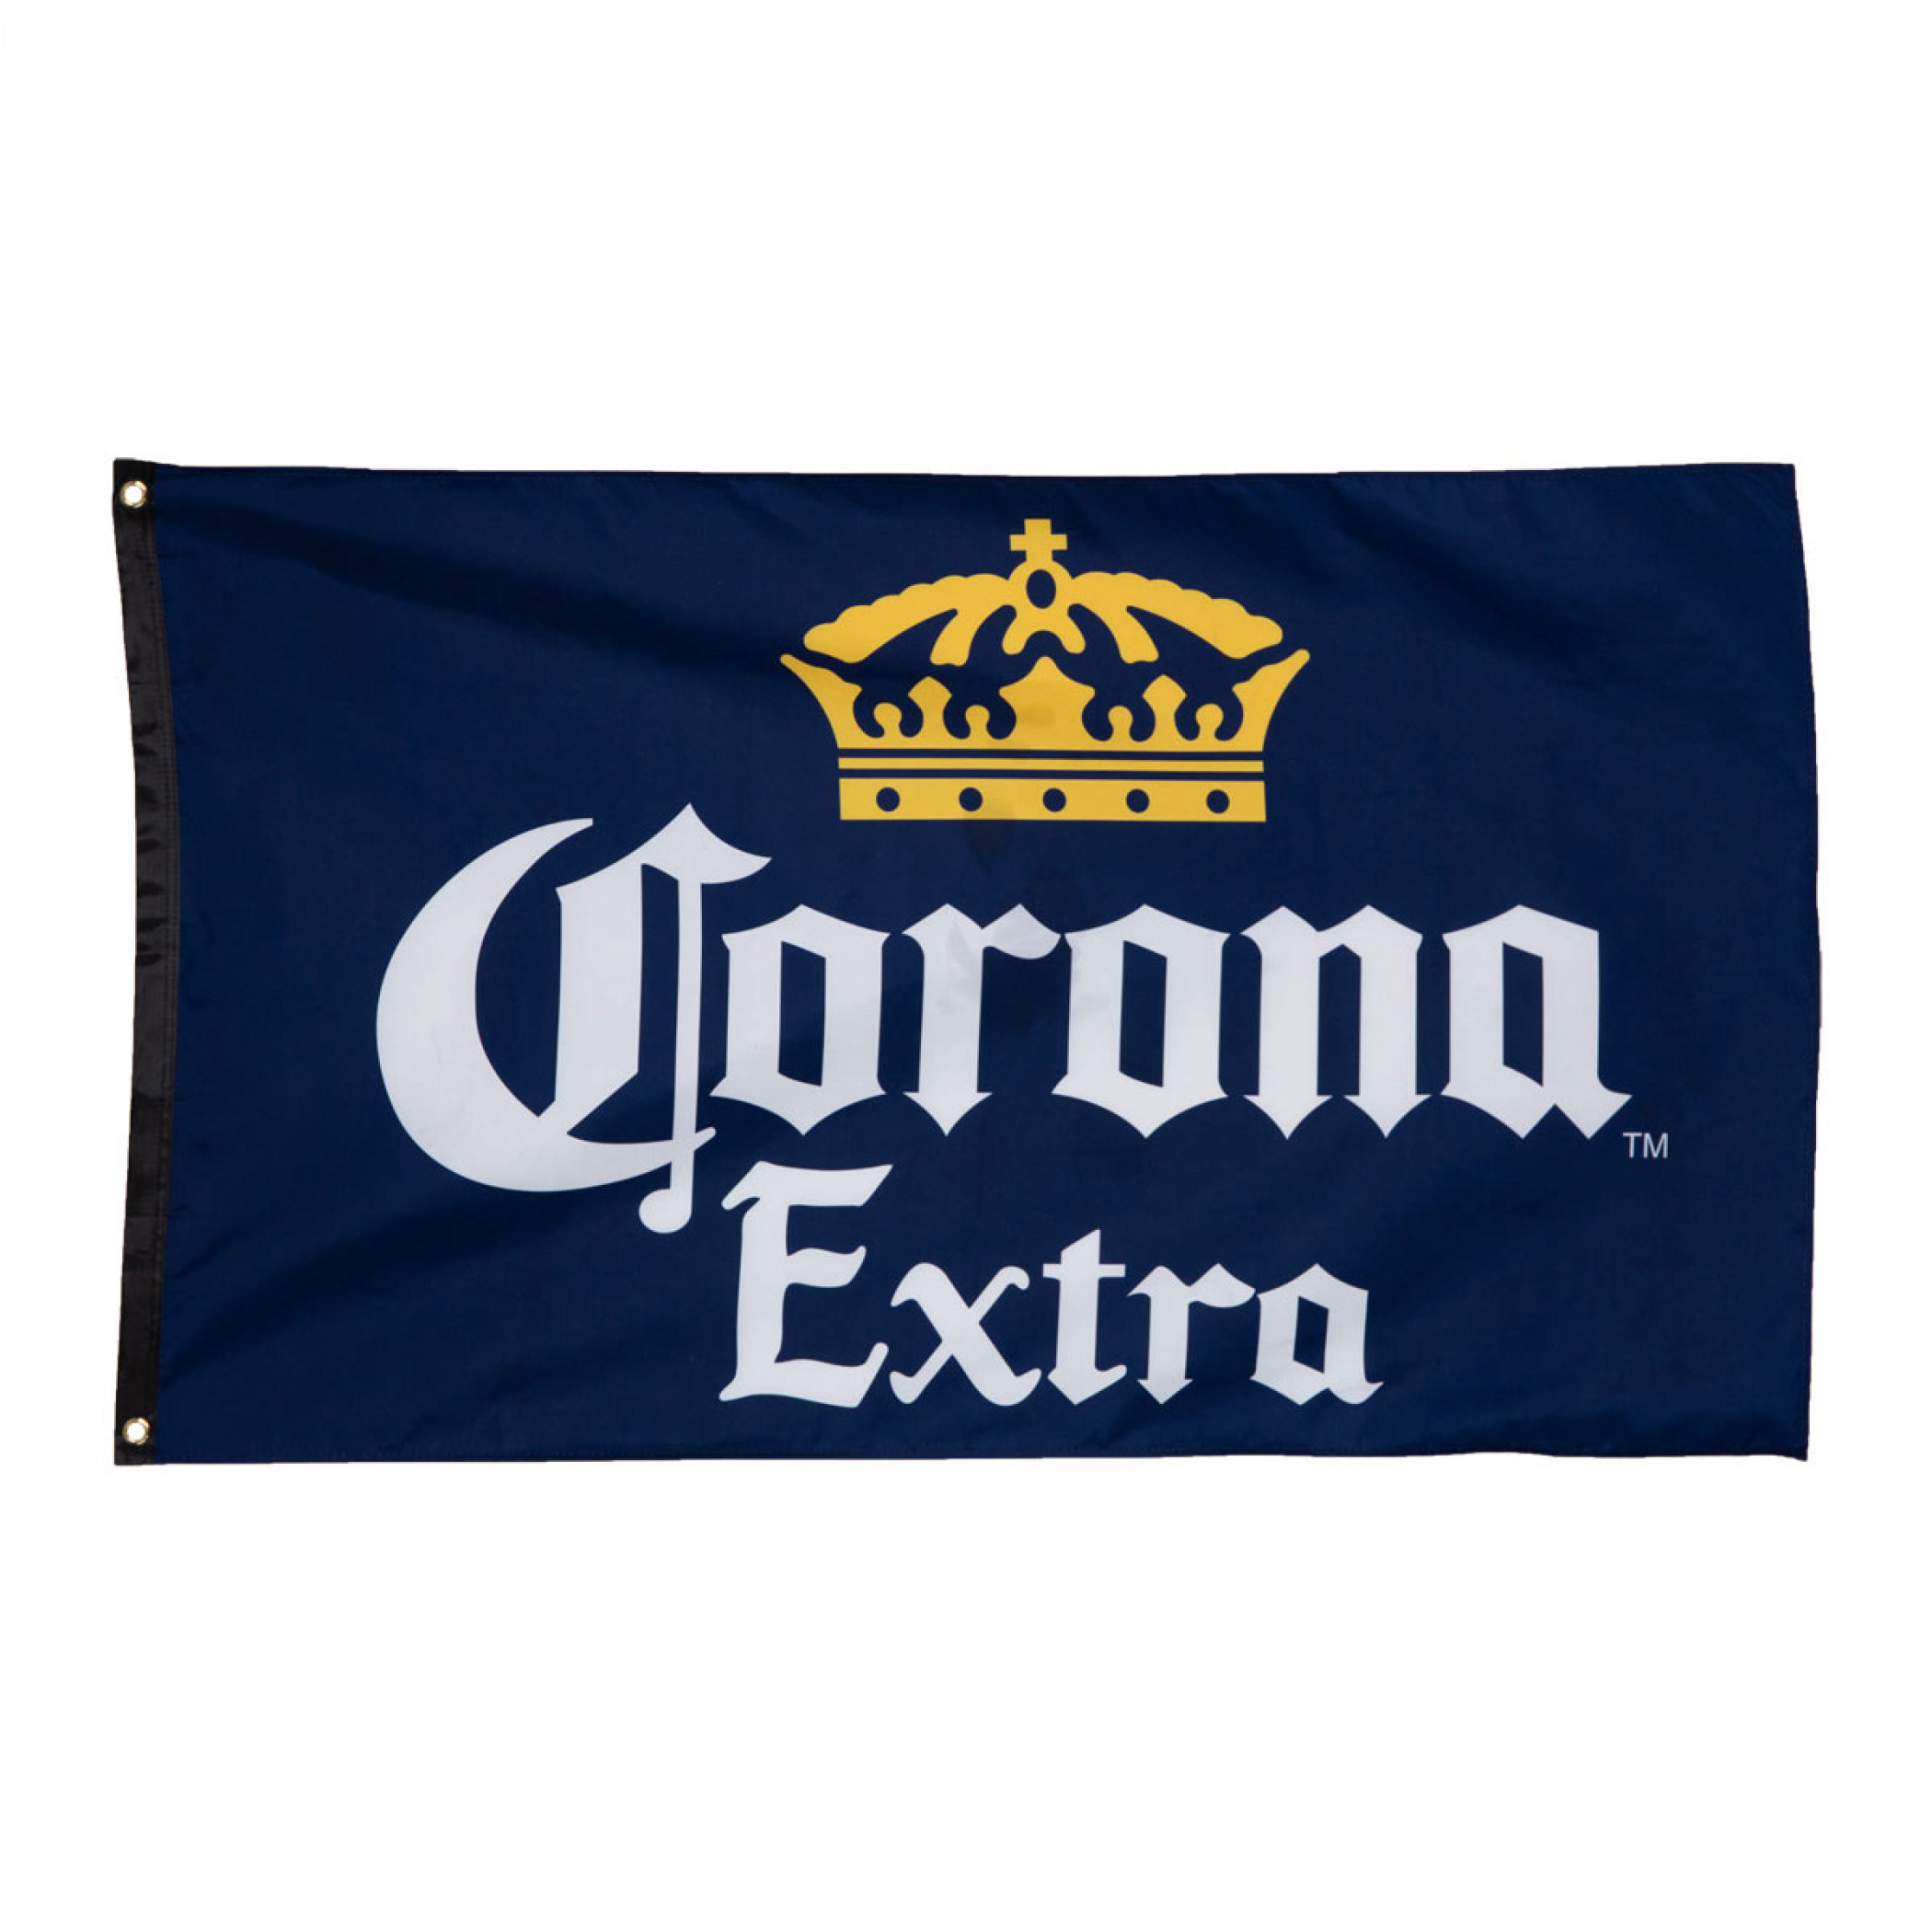 Corona Extra Navy Blue Flag